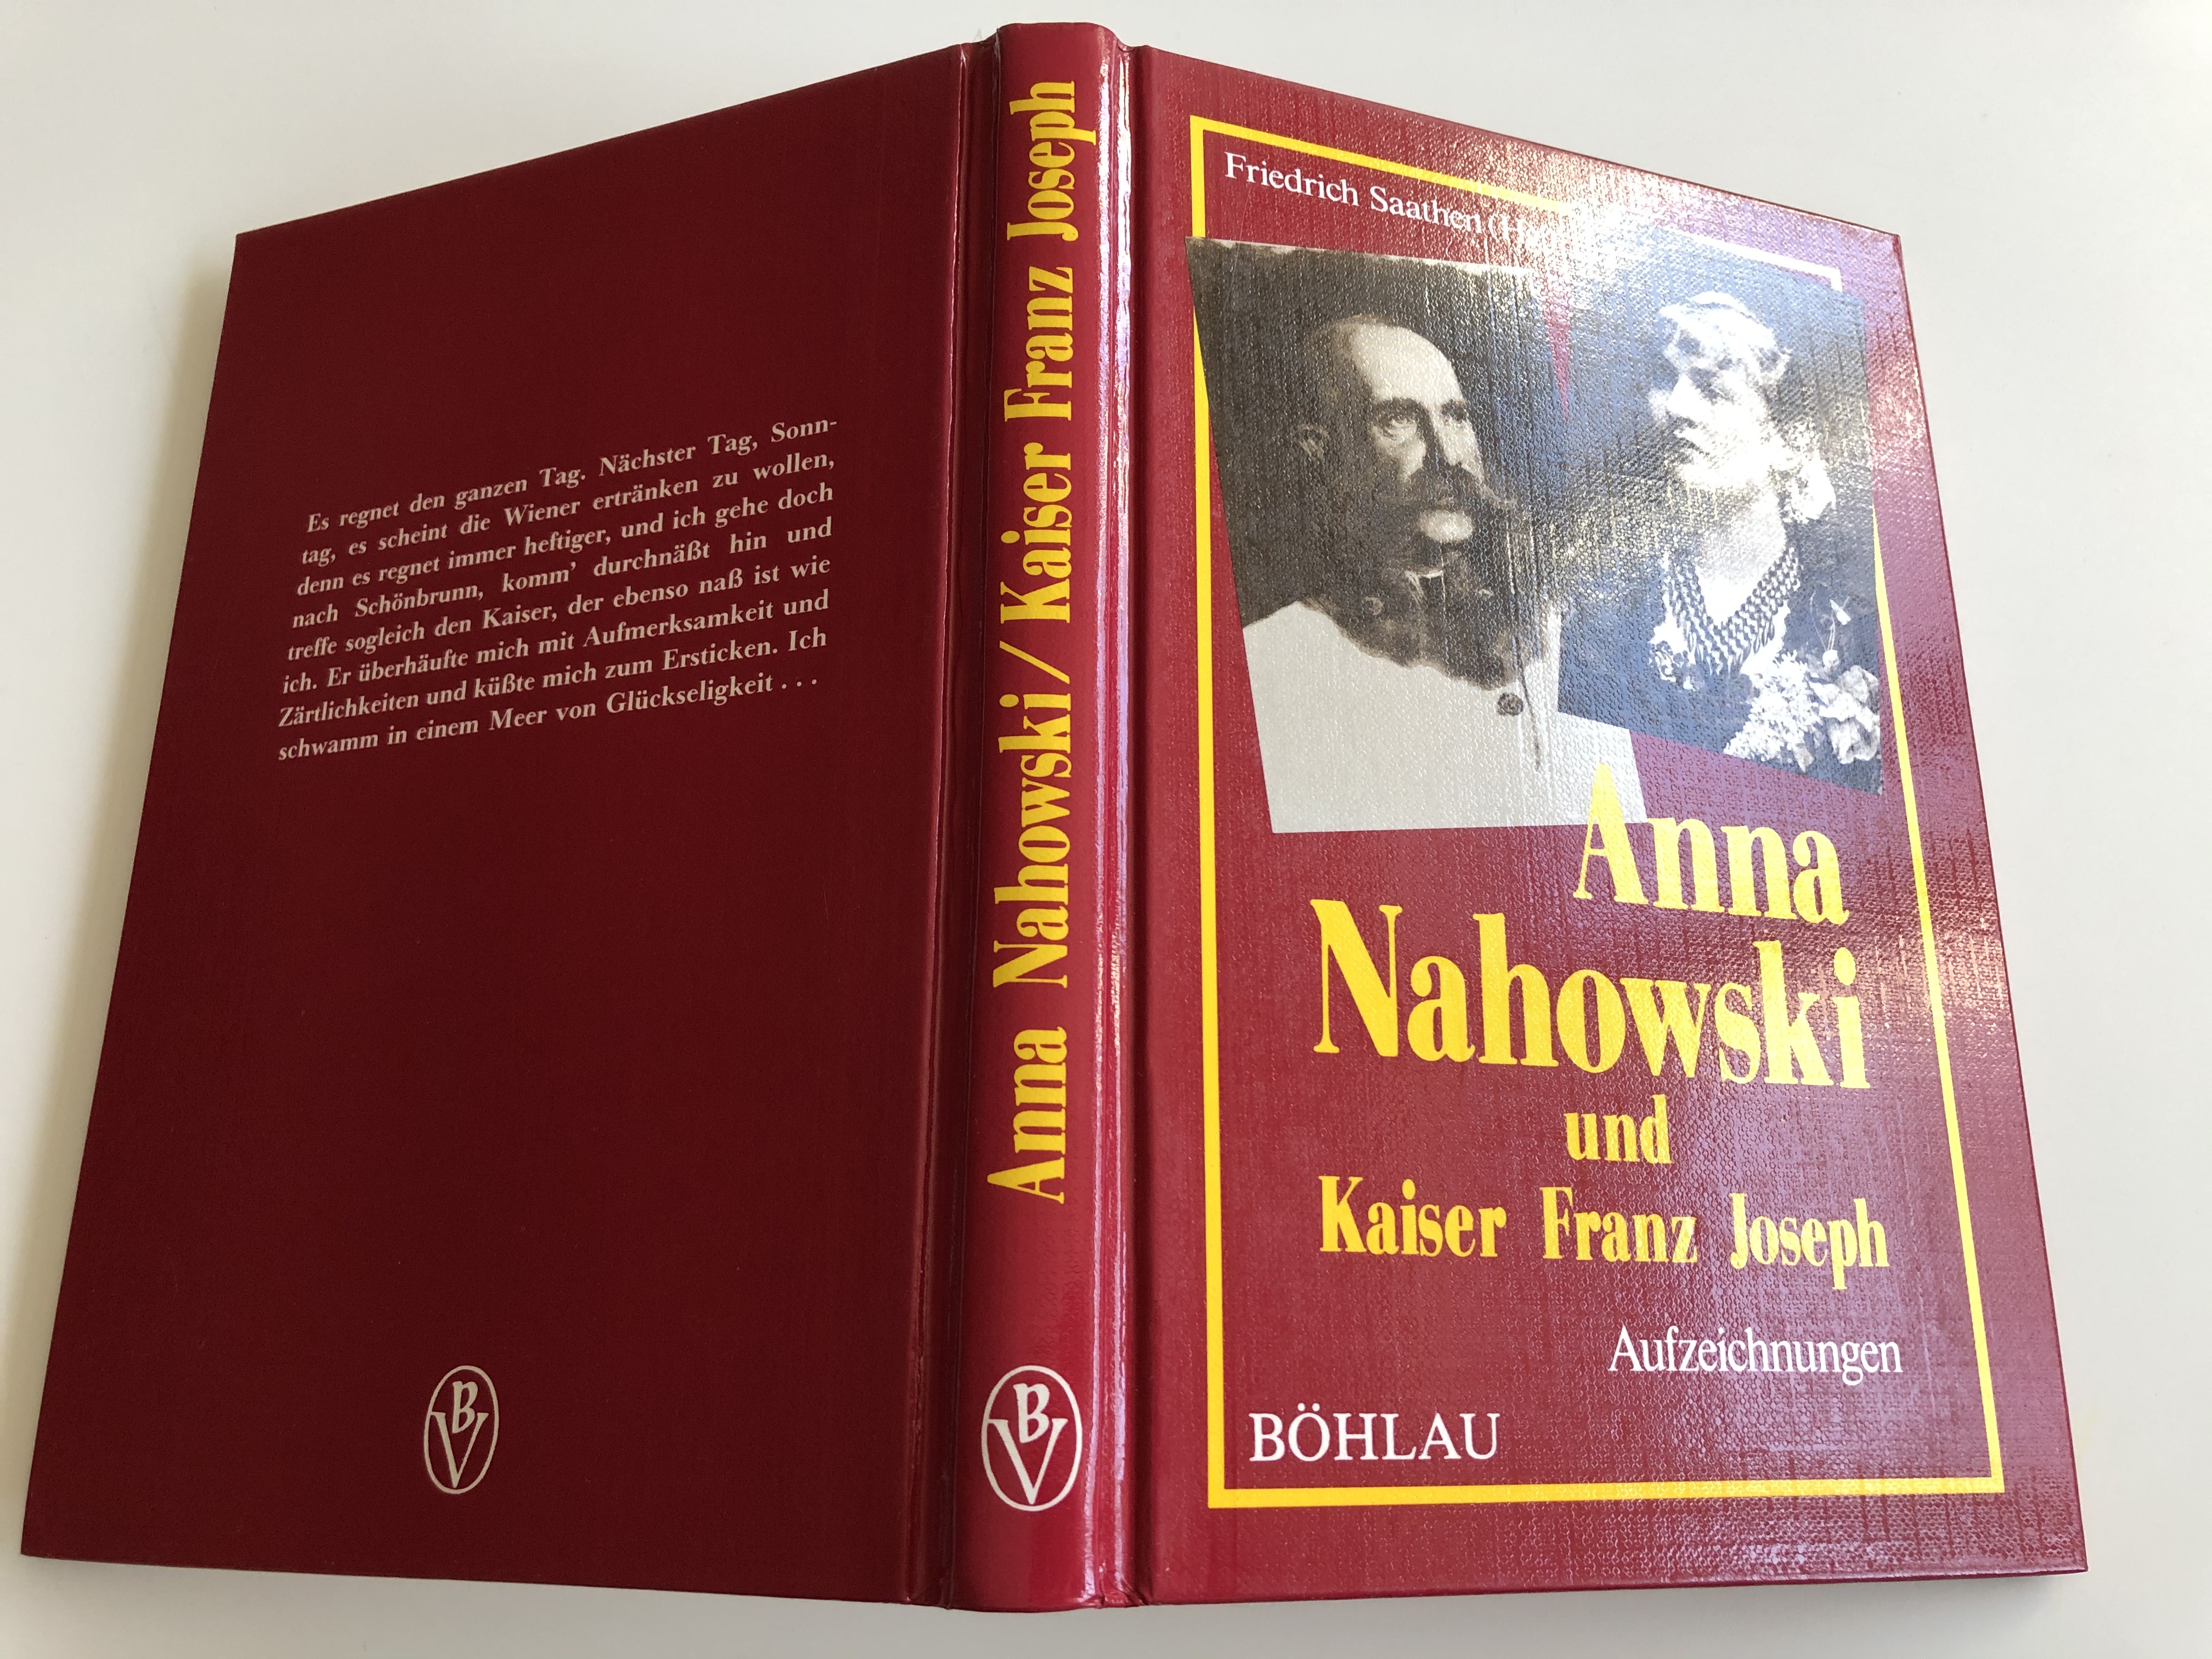 anna-nahowski-und-kaiser-franz-joseph-by-friedrich-saathen-hg.-17.jpg